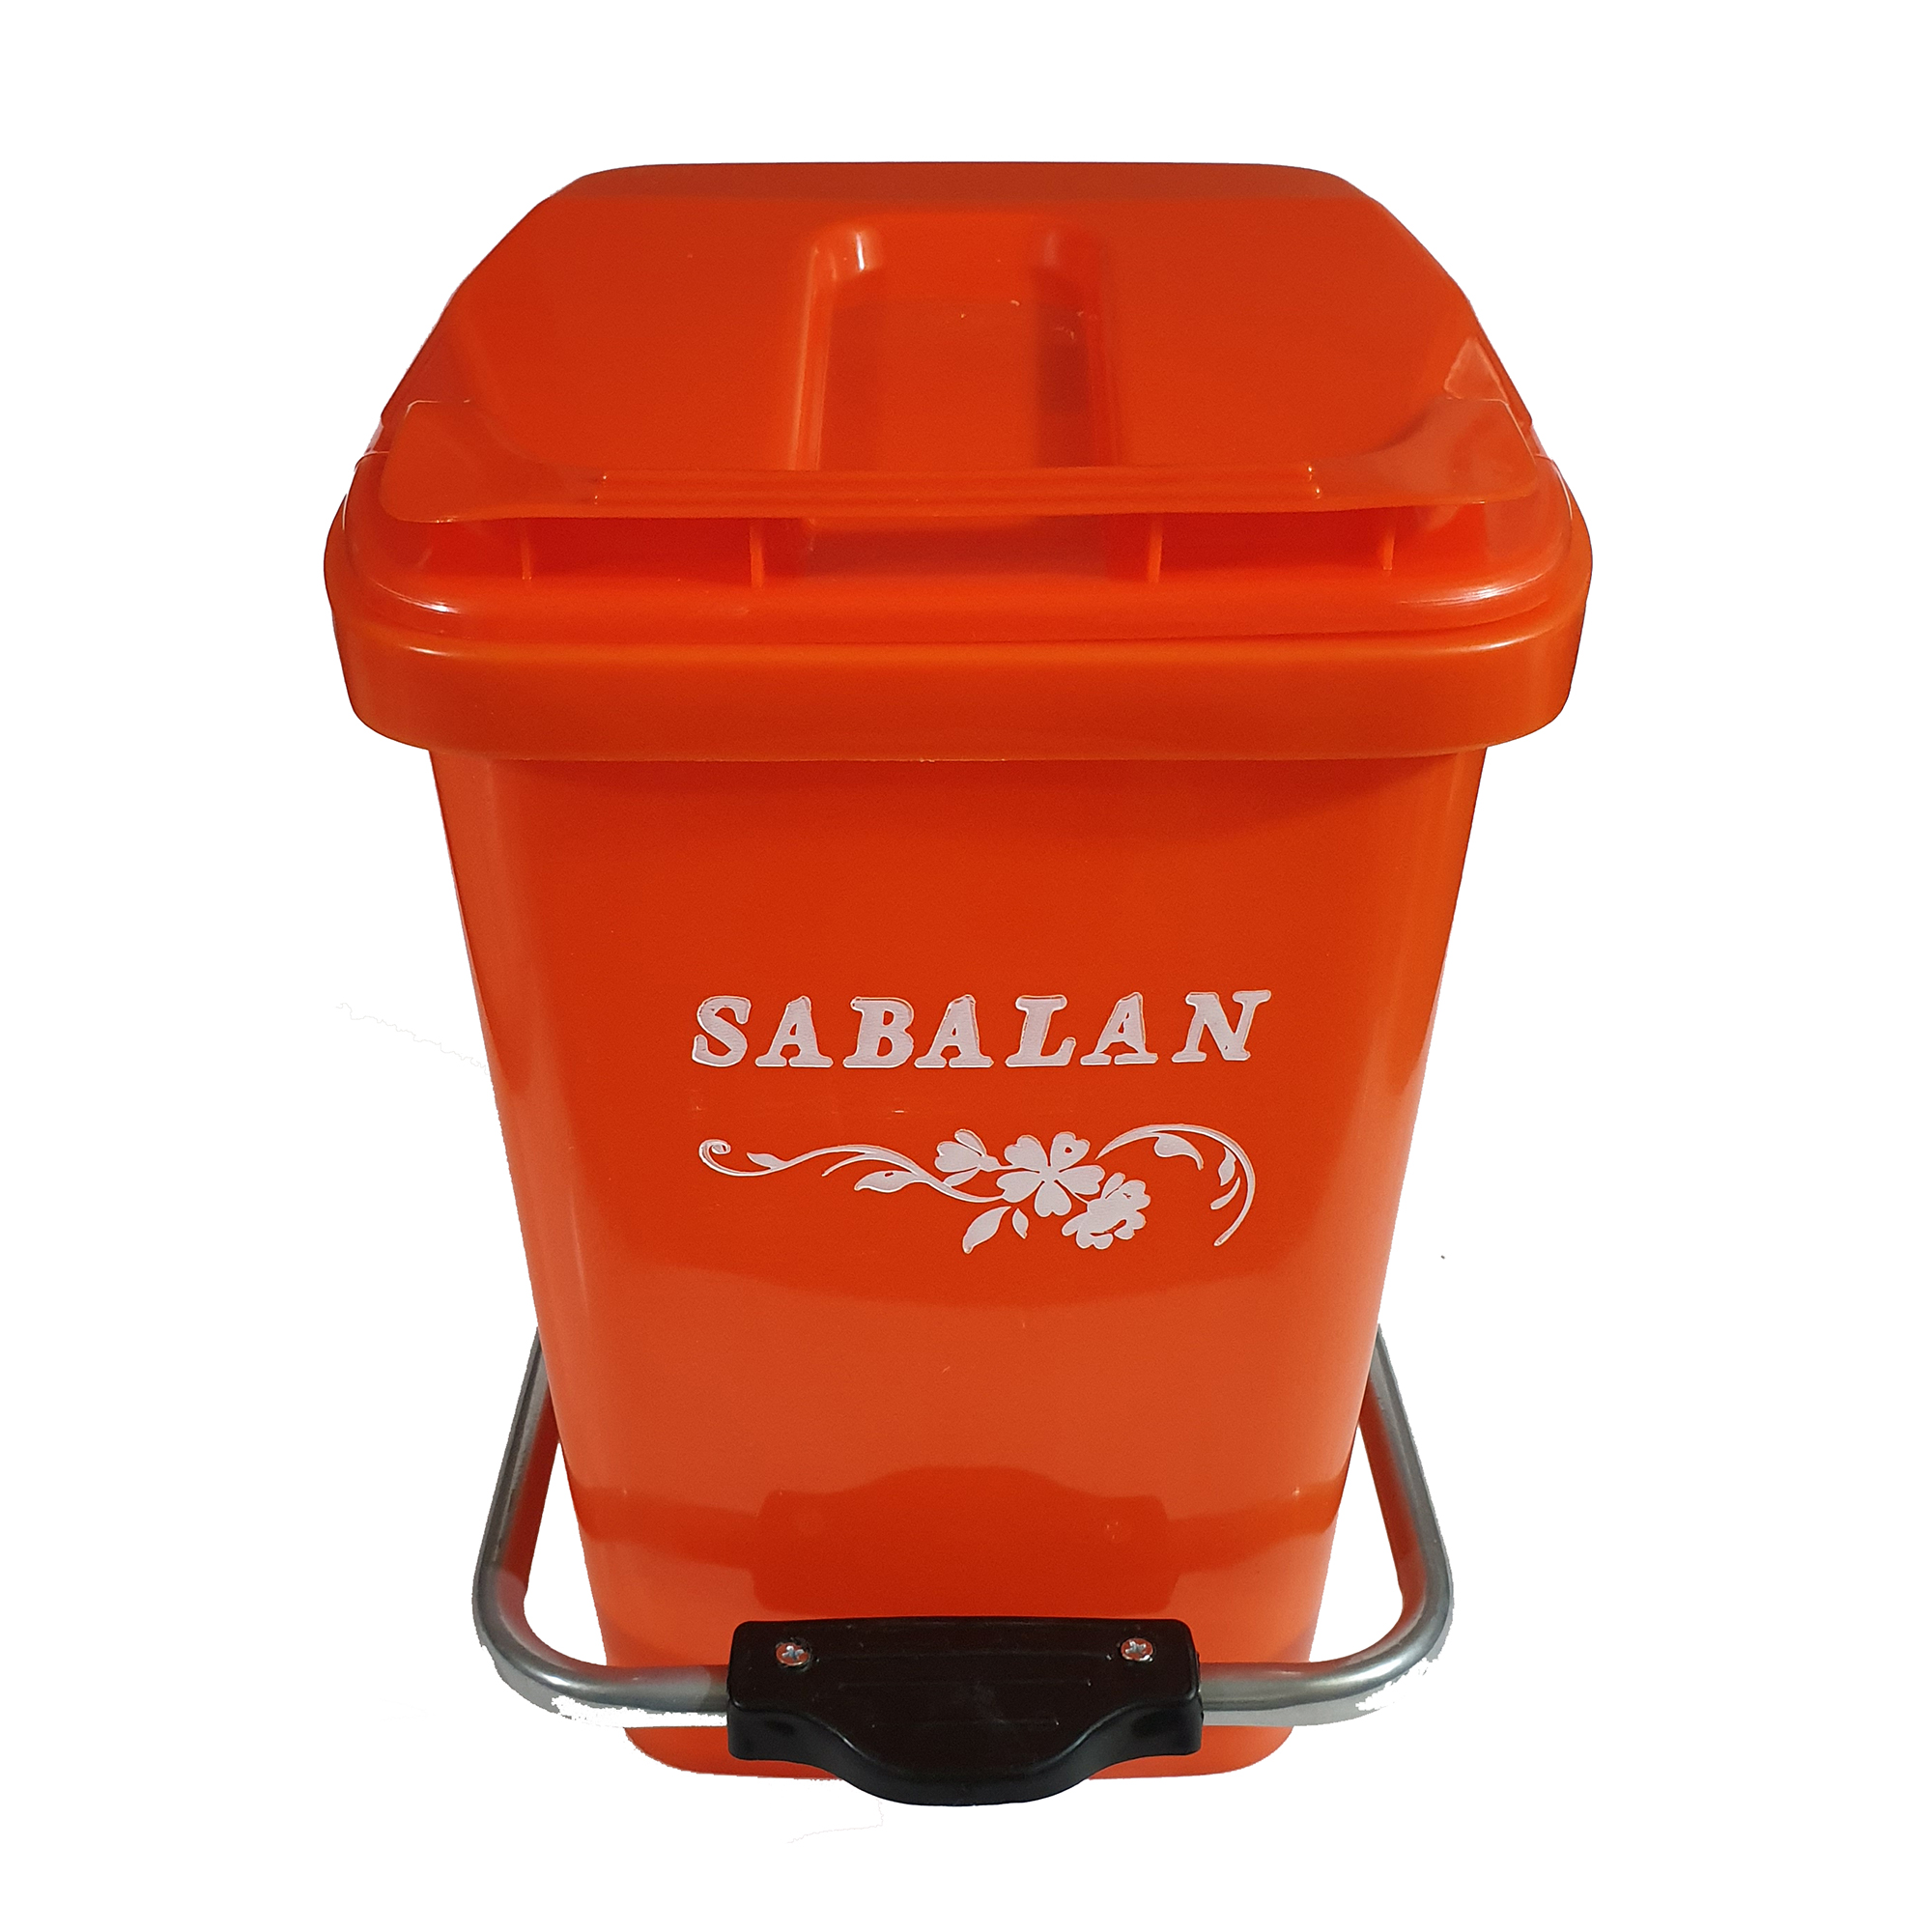 سطل زباله اداری سبلان کد 222.1